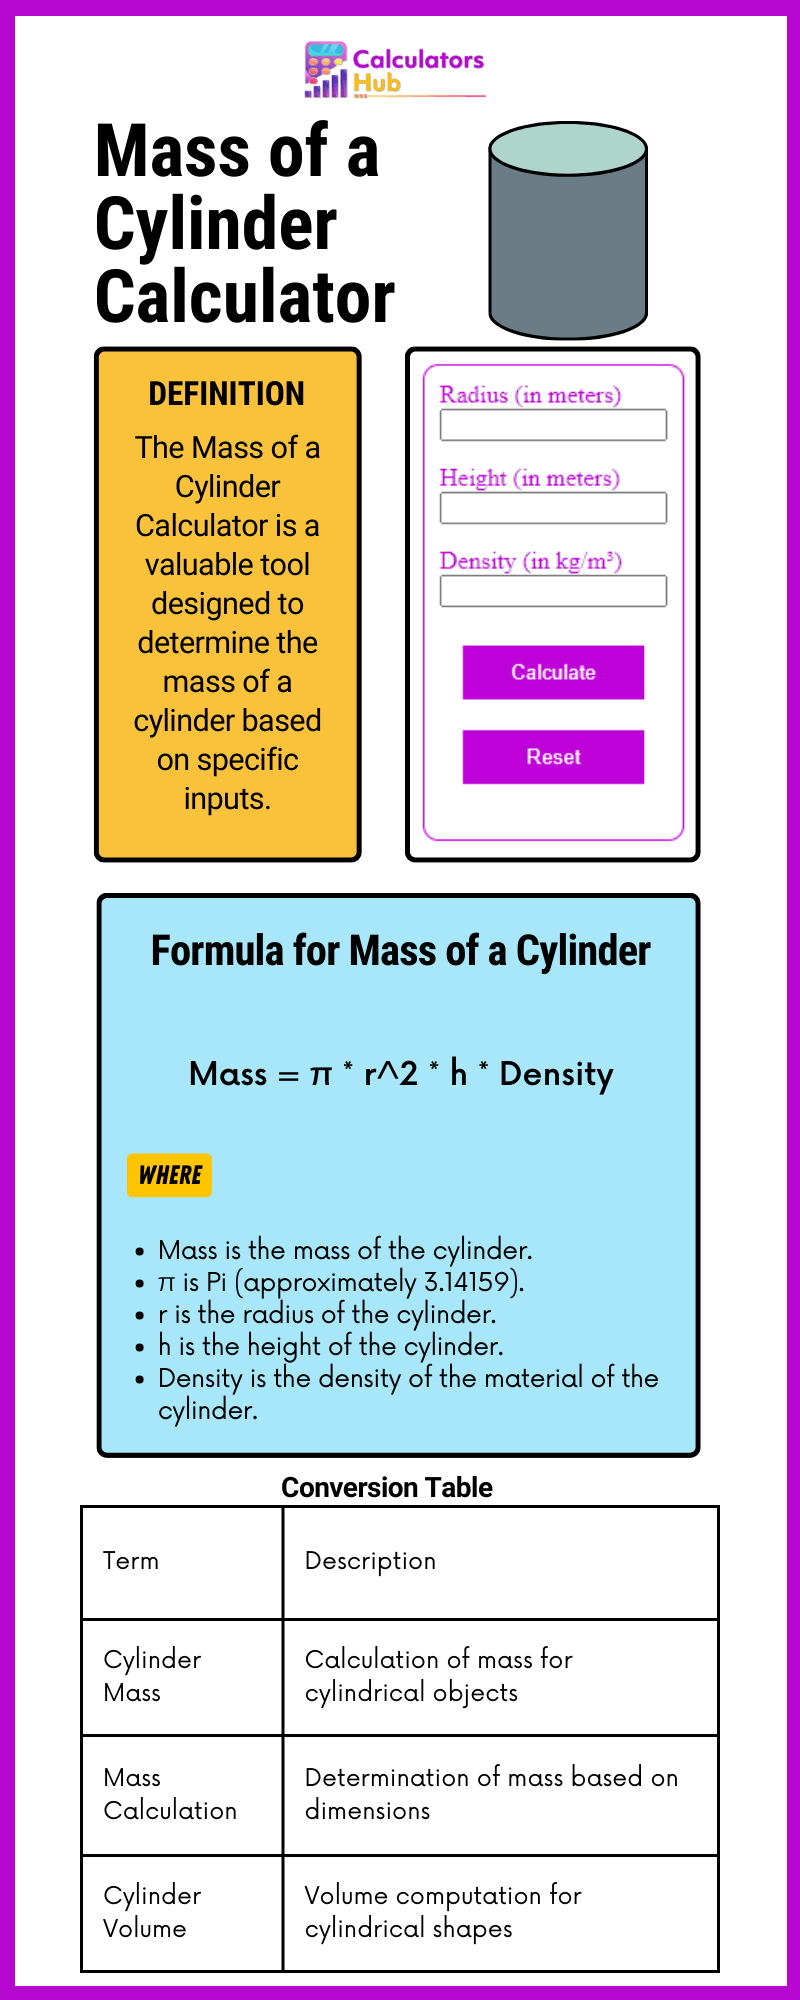 Mass of a Cylinder Calculator